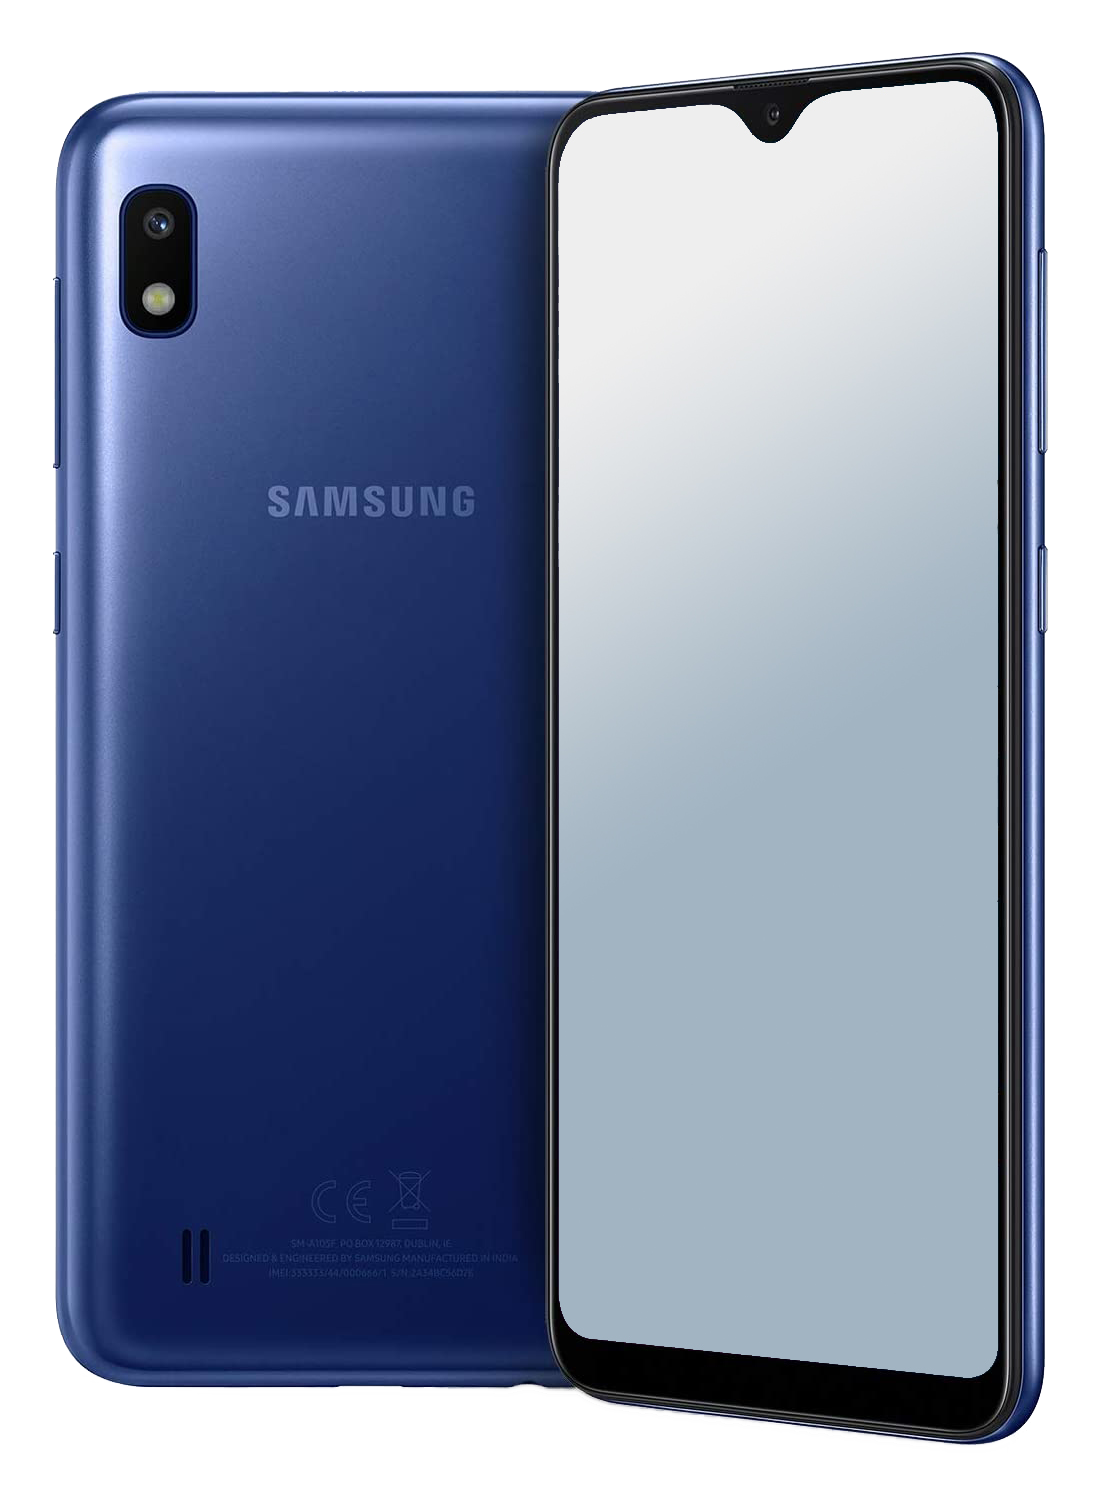 Samsung Galaxy A10 Dual-SIM blau - Ohne Vertrag